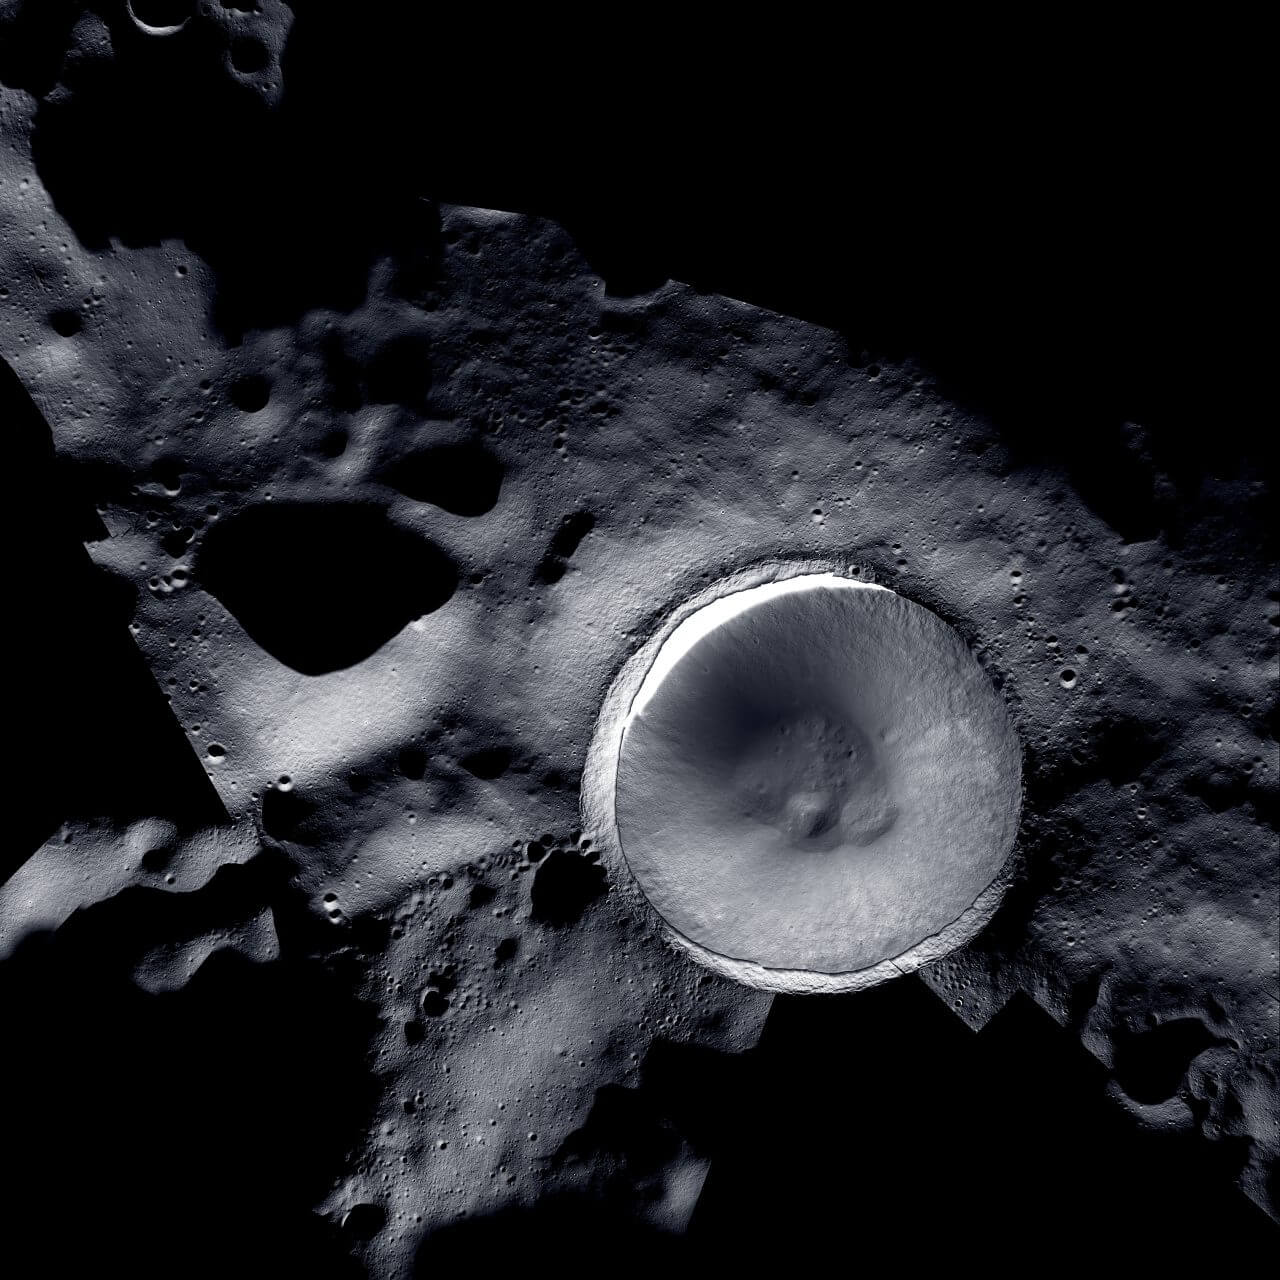 【▲ 月の南極にあるシャクルトン・クレーターとその周辺。アメリカ航空宇宙局（NASA）の月周回衛星「ルナー・リコネサンス・オービター（LRO）」に搭載されている光学観測装置「LROC」で取得した月面の画像と、韓国航空宇宙研究院（KARI）の月探査機「タヌリ（KPLO）」に搭載されているNASAの観測装置「ShadowCam」で取得したシャクルトン・クレーター内部の画像を組み合わせて作成（Credit: Mosaic created by LROC (Lunar Reconnaissance Orbiter) and ShadowCam teams with images provided by NASA/KARI/ASU）】